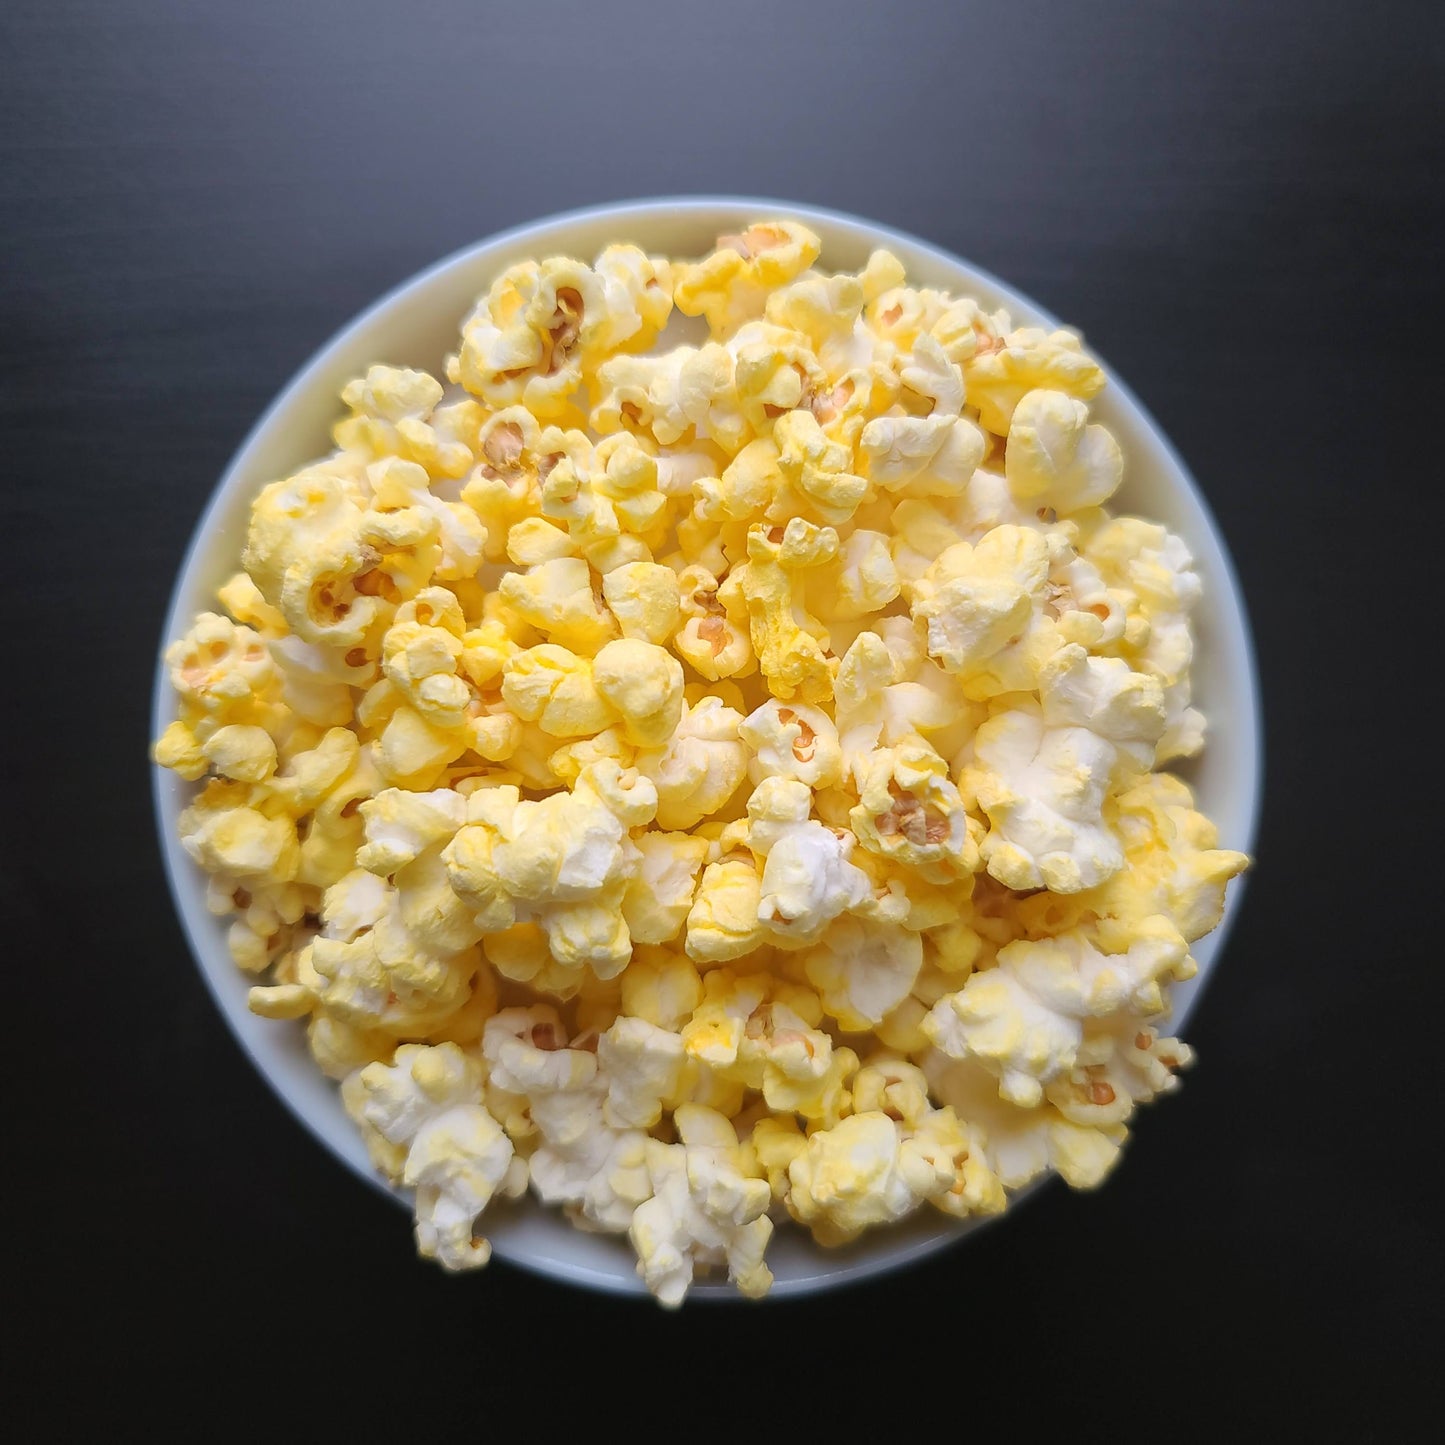 PKSA Lansing - Cravings Gourmet Popcorn